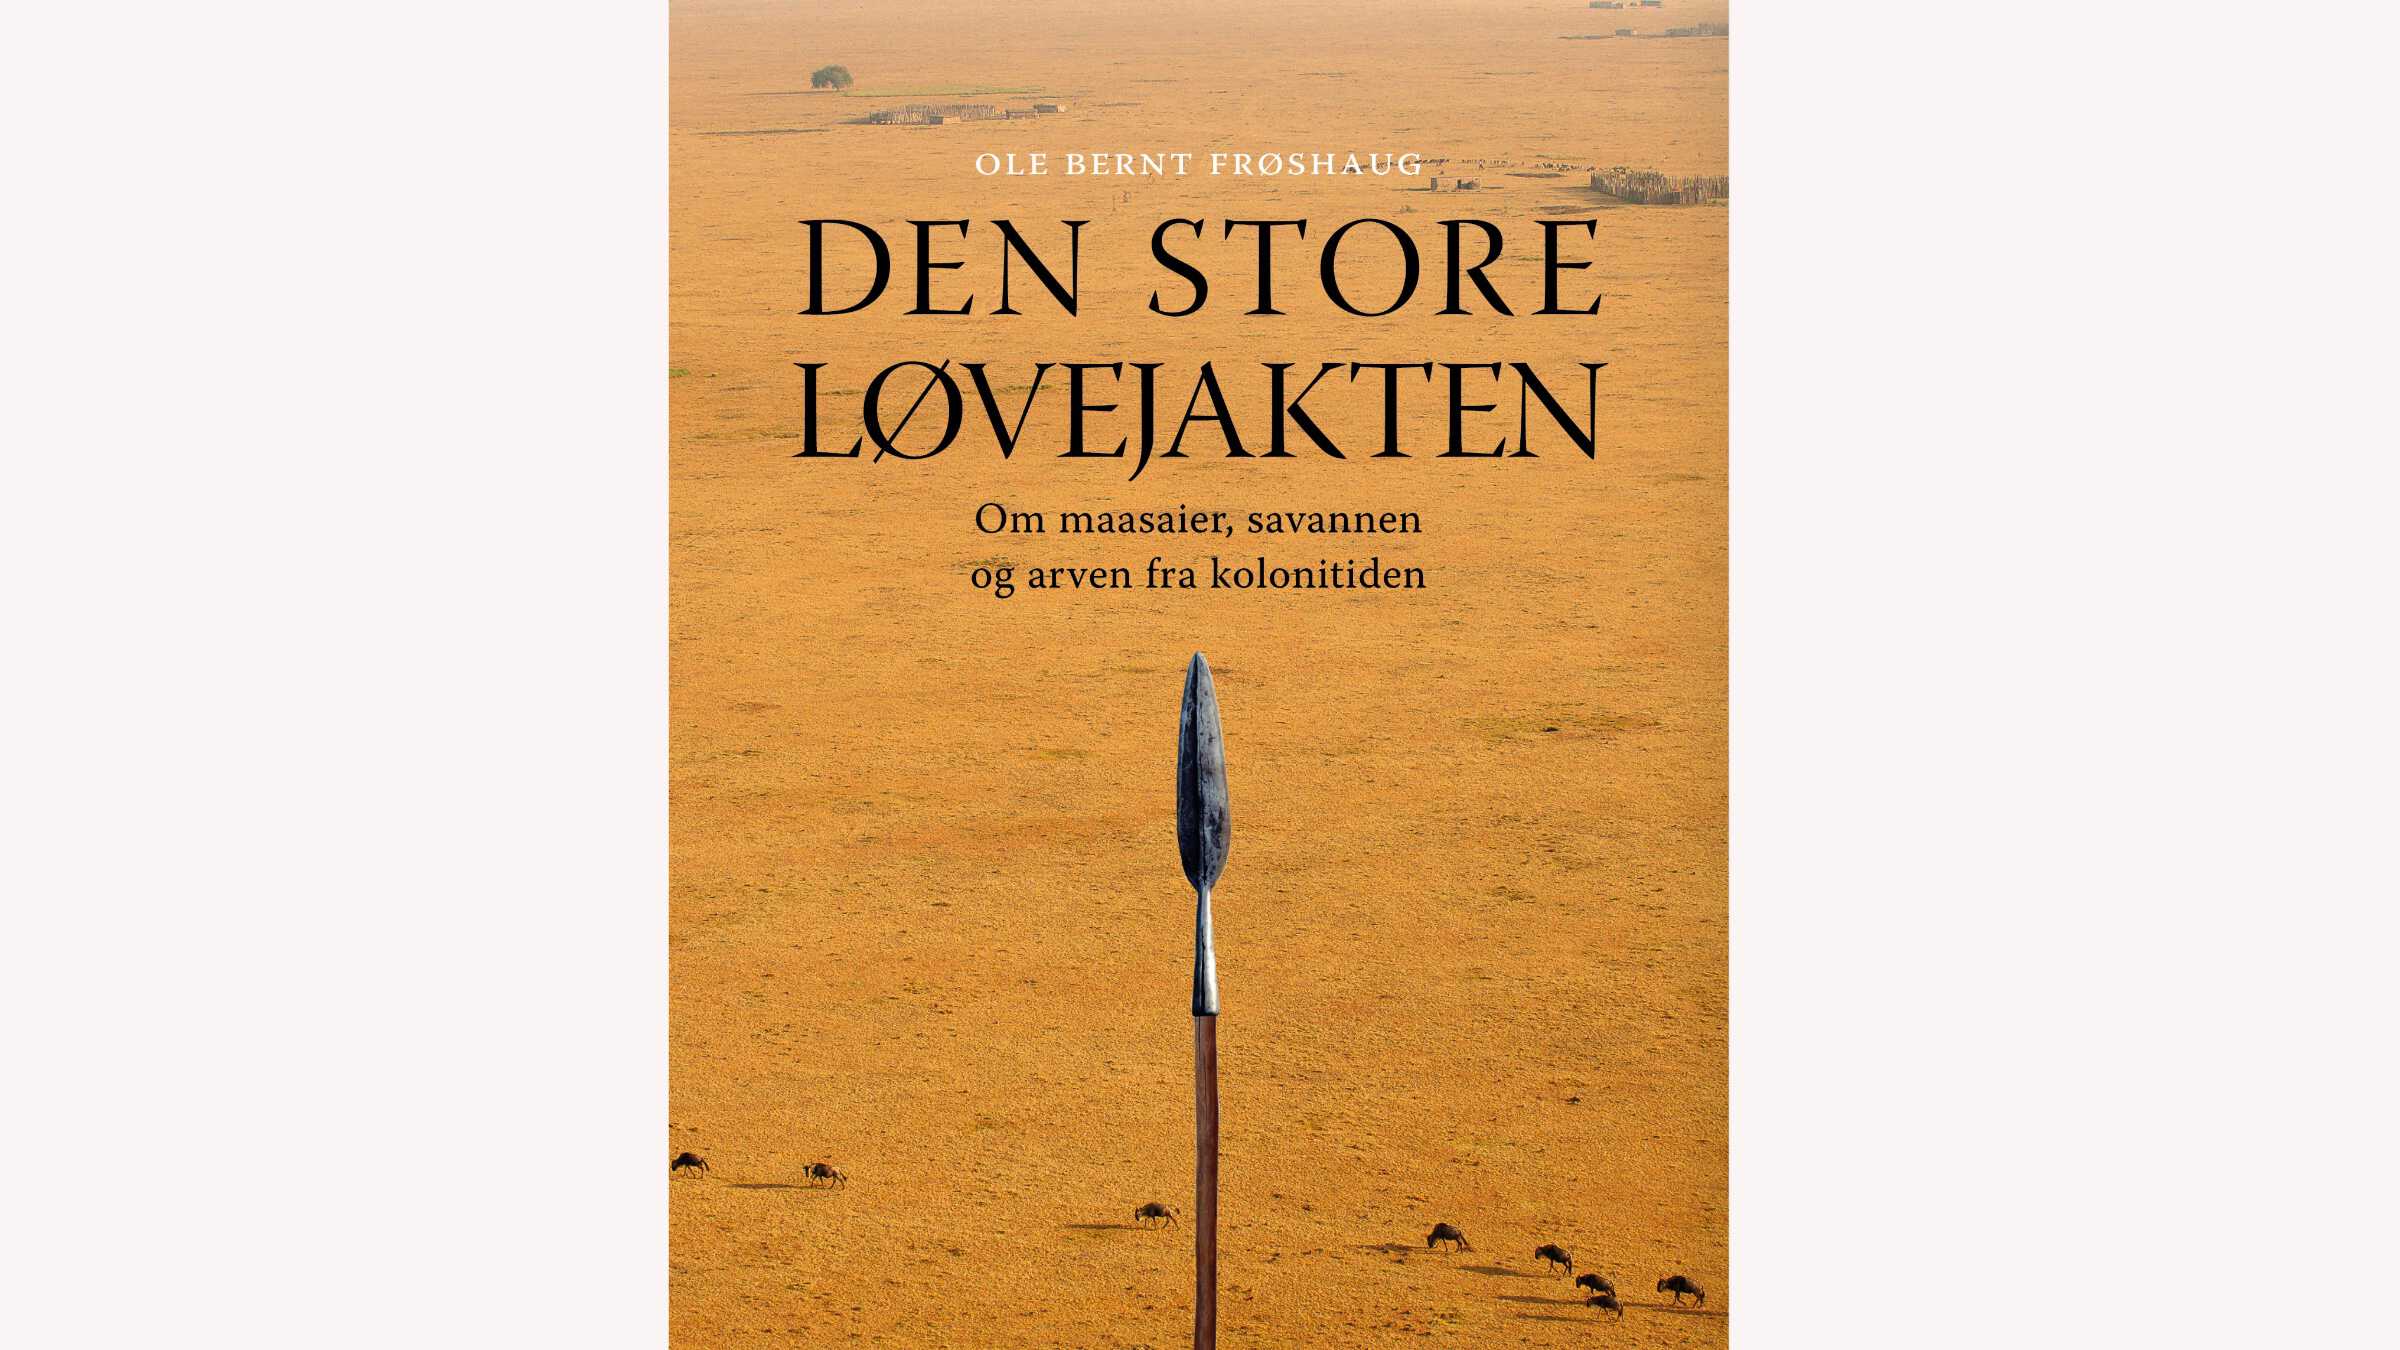 Den store løvejakten, av Ole Bernt Frøshaug forside ISBN 9788293130185